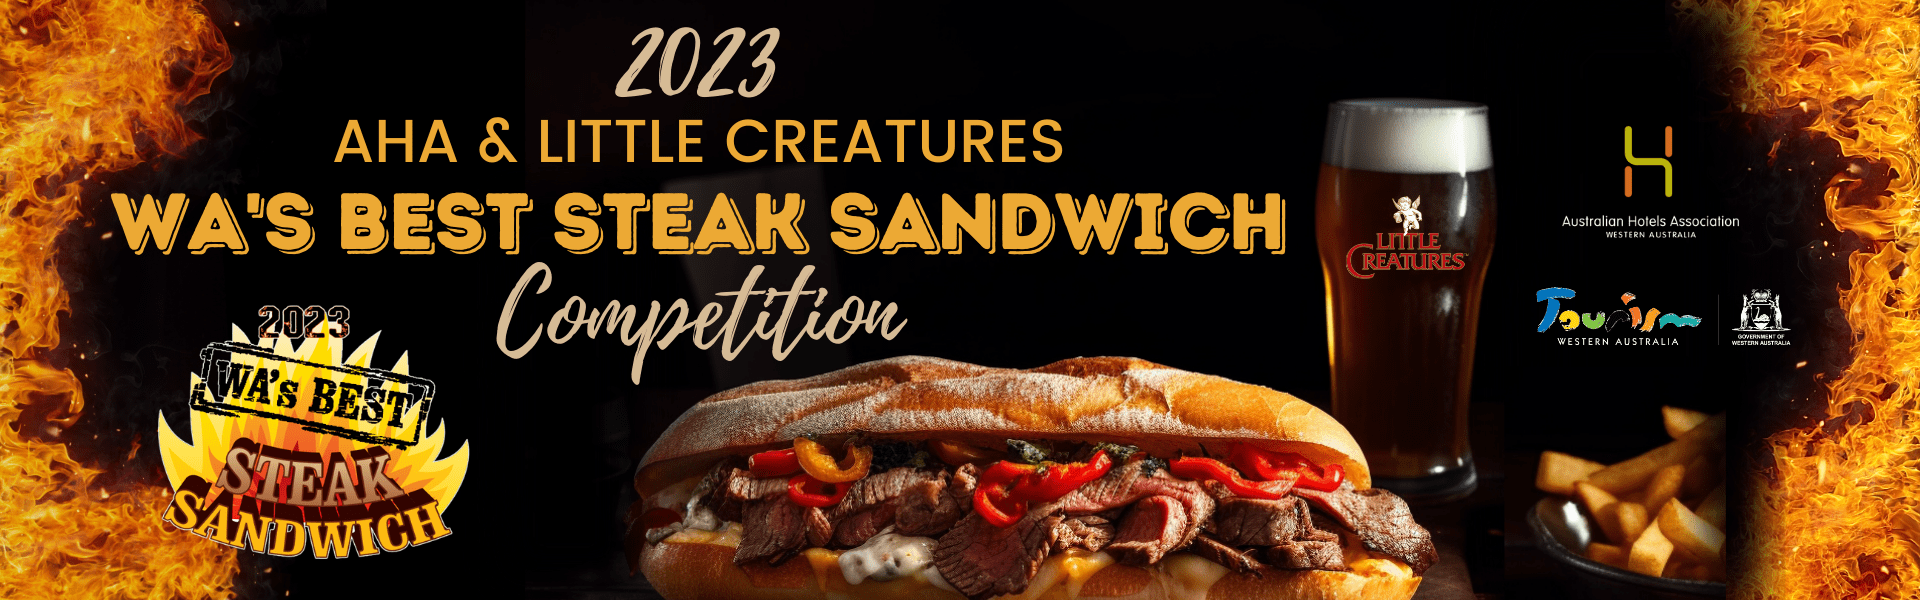 WA's Best Steak Sandwich Competition 2023 Banner